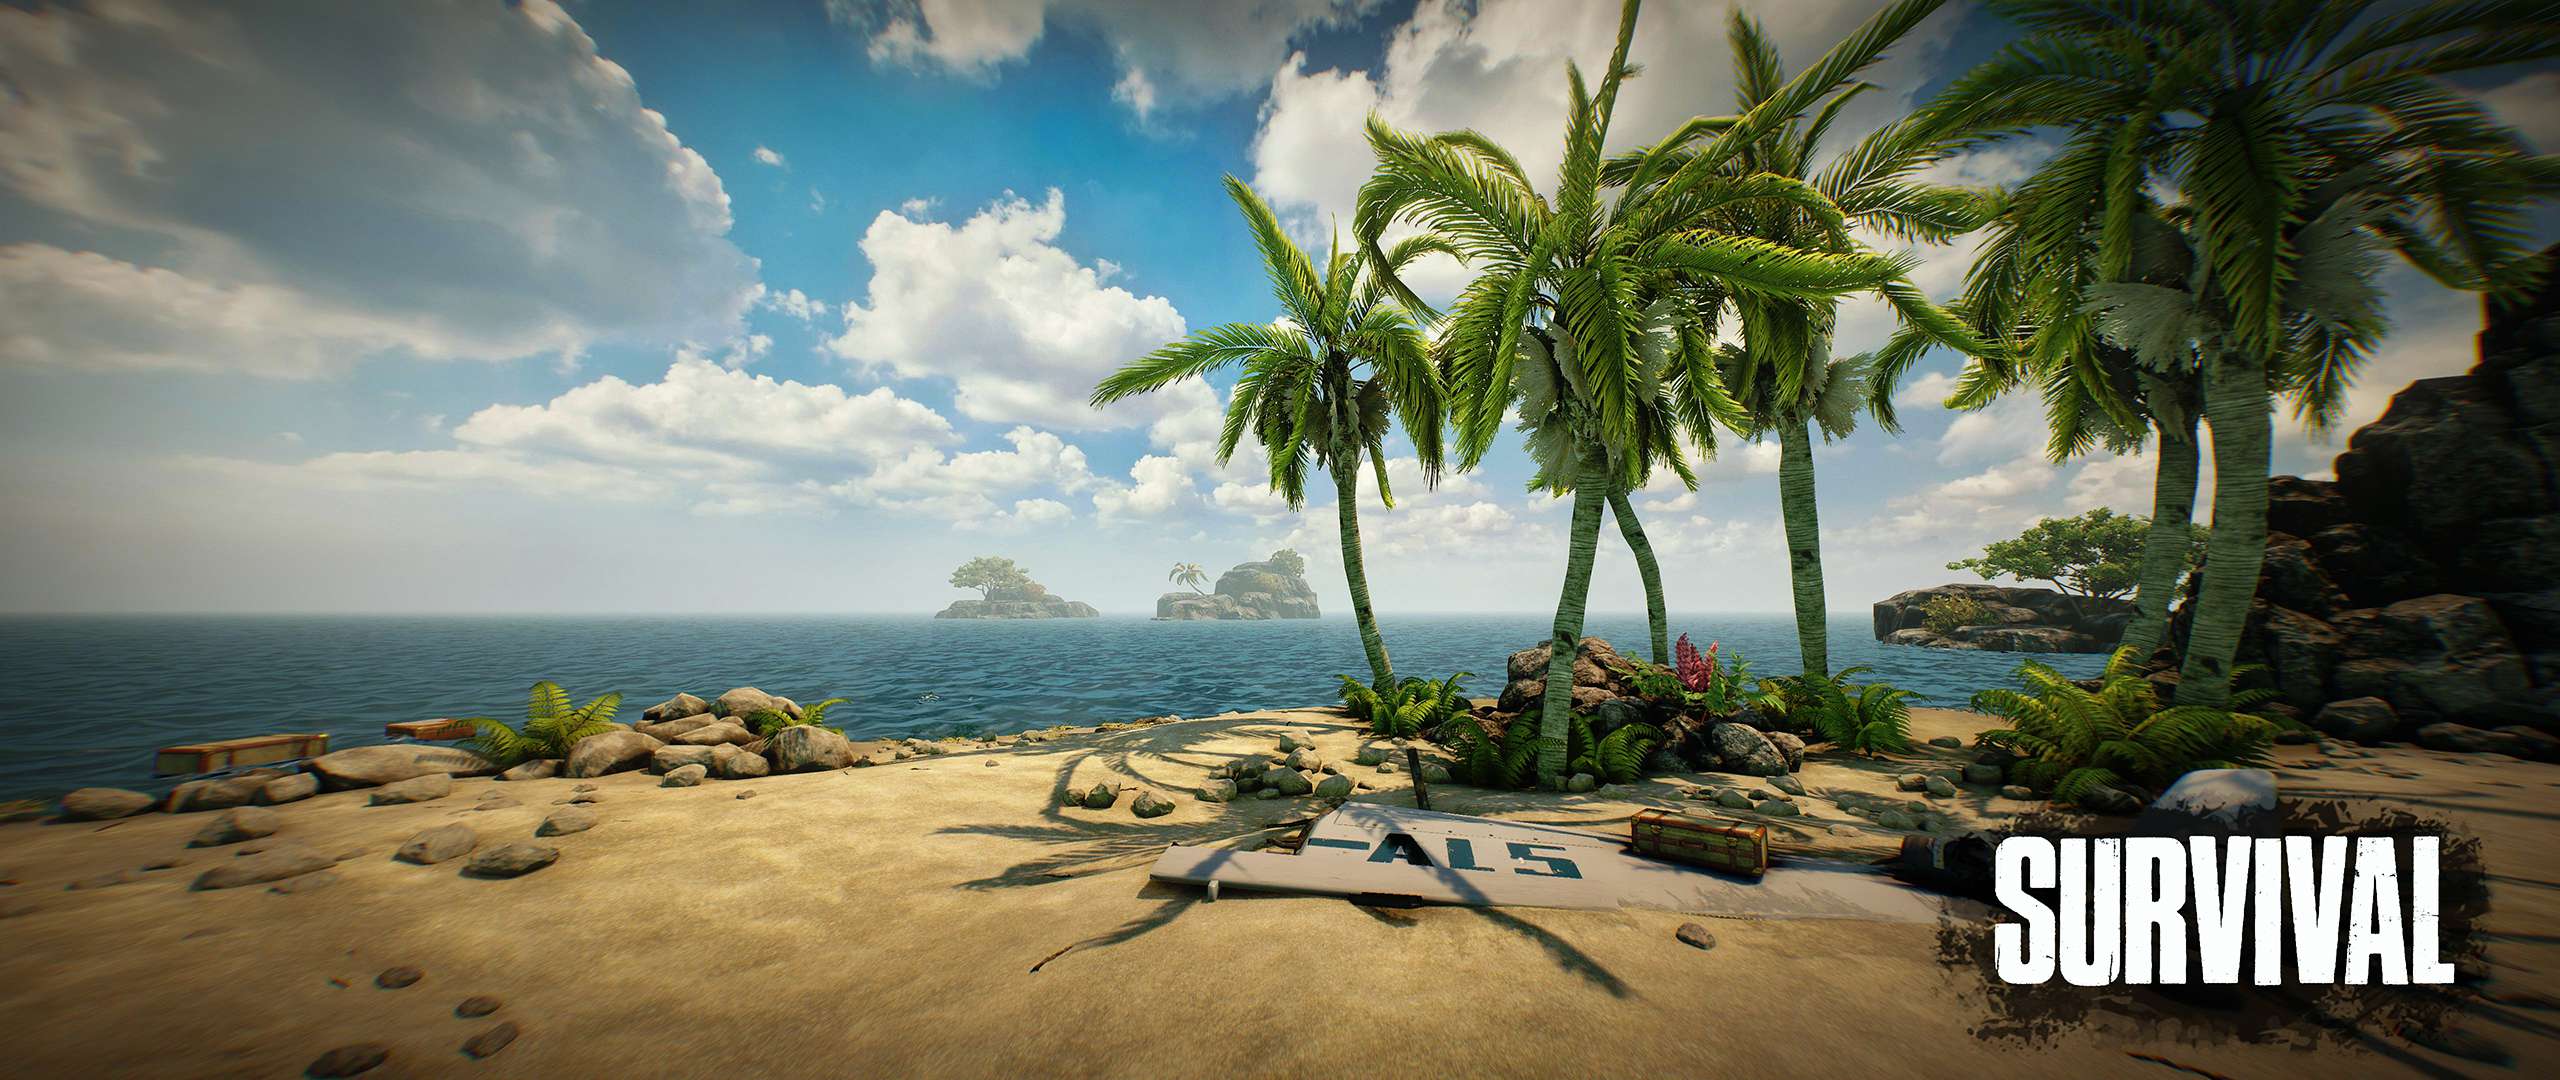 ESCAPE ROOM VR Survival: Sopravvivi 6 giorni sull'isola deserta